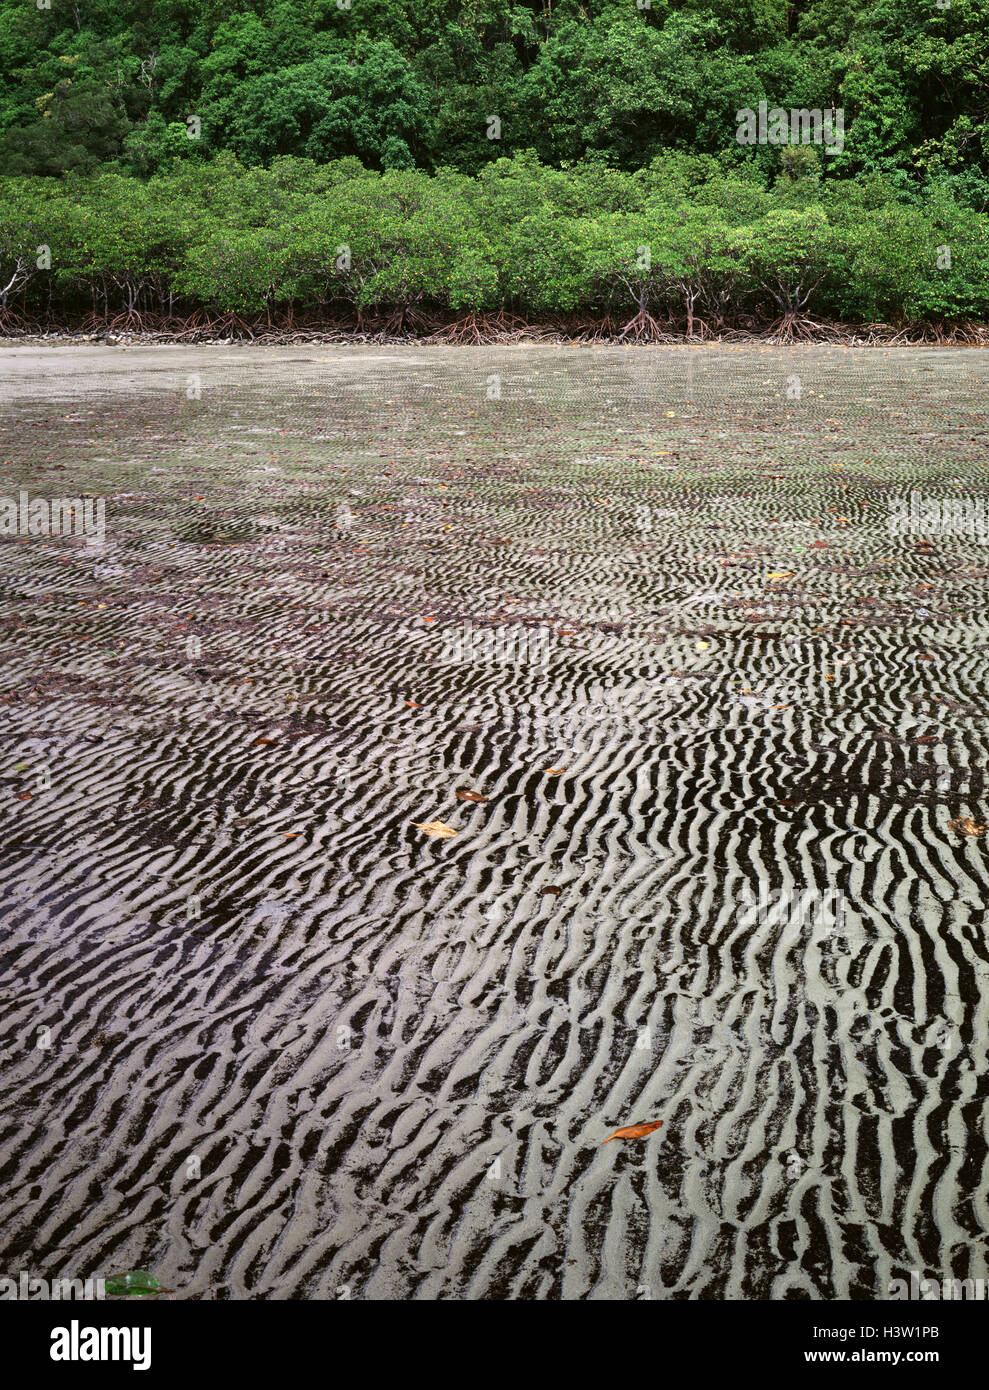 Enracinée,, des mangroves (Rhizophora stylosa) Banque D'Images